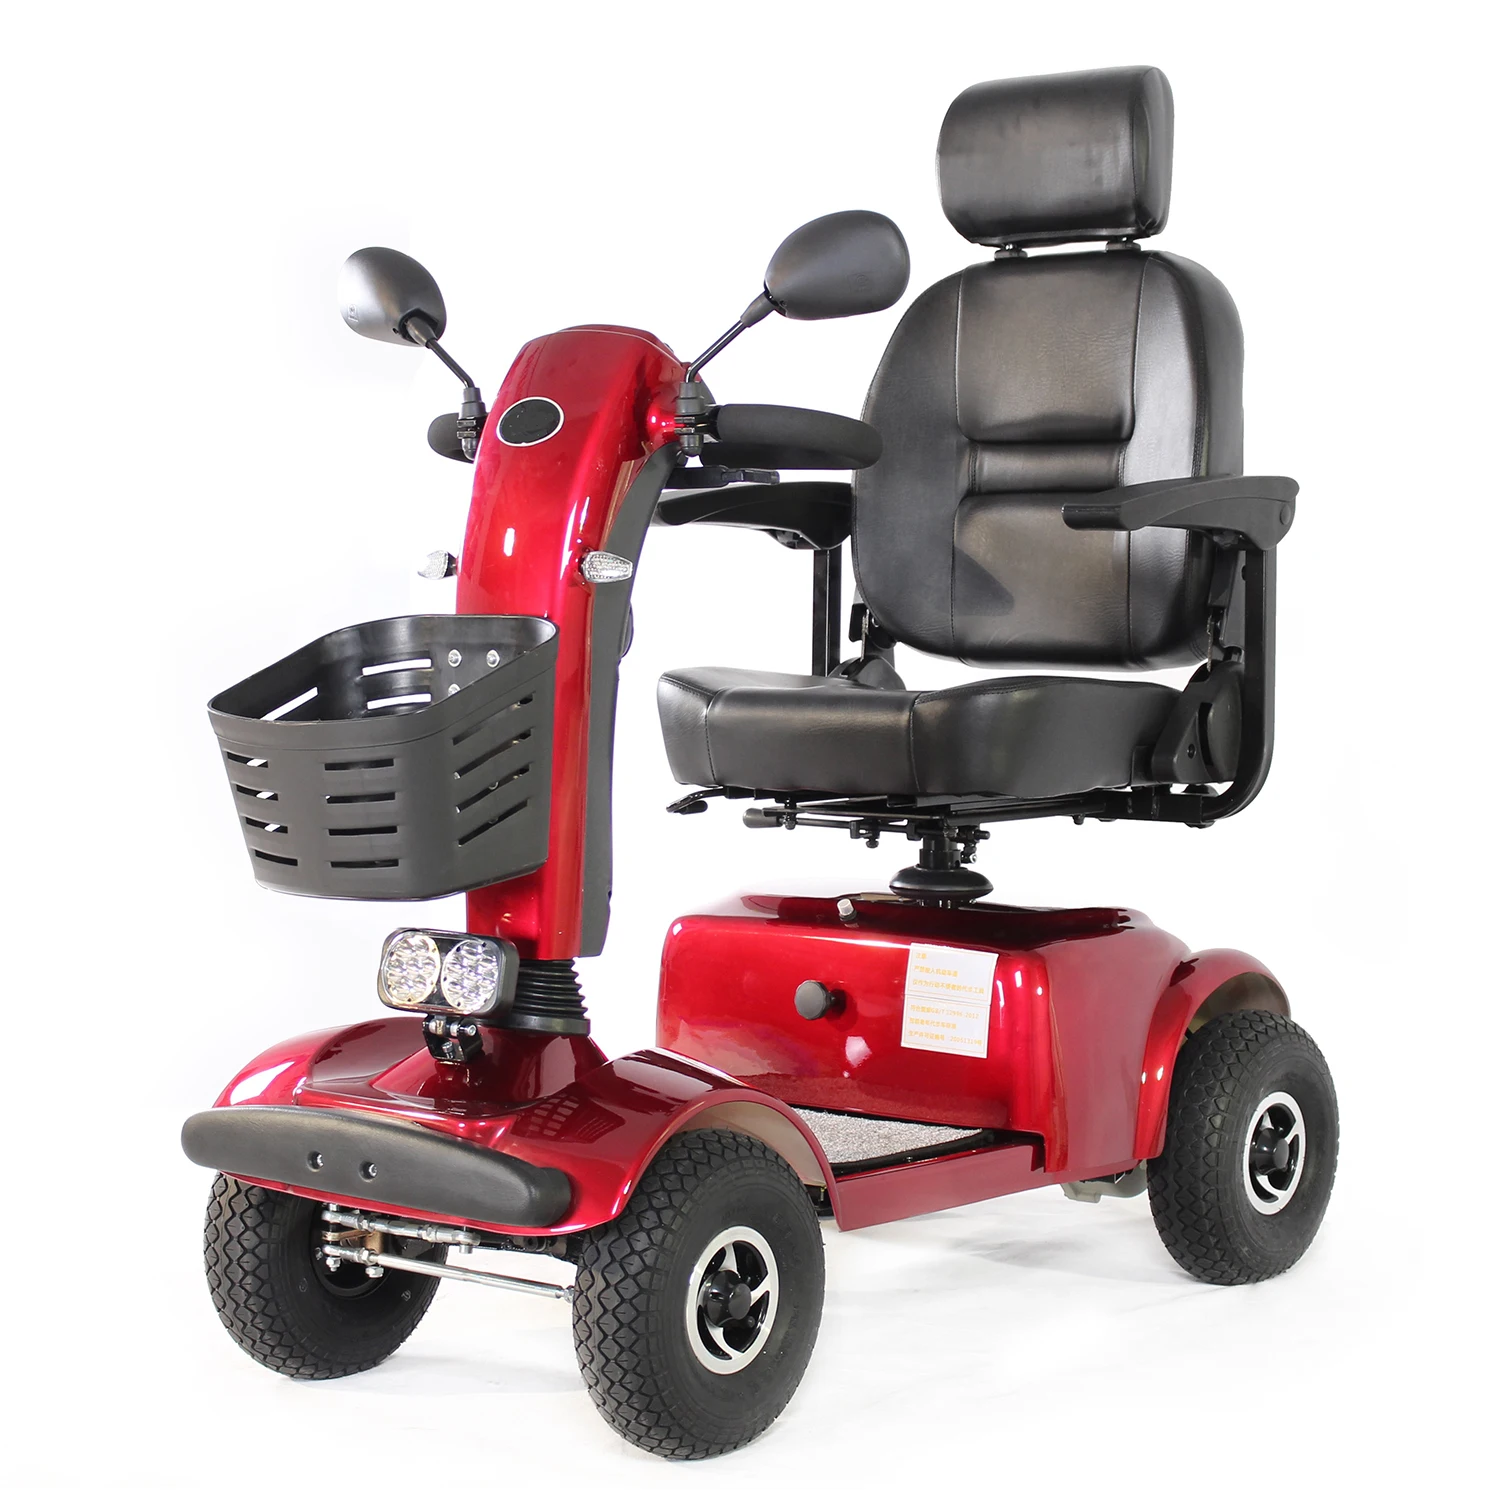 

Мобильный скутер для взрослых, 4-х колесный электрический скутер с сиденьем, заряжаемое устройство для путешествий, повышенная безопасность